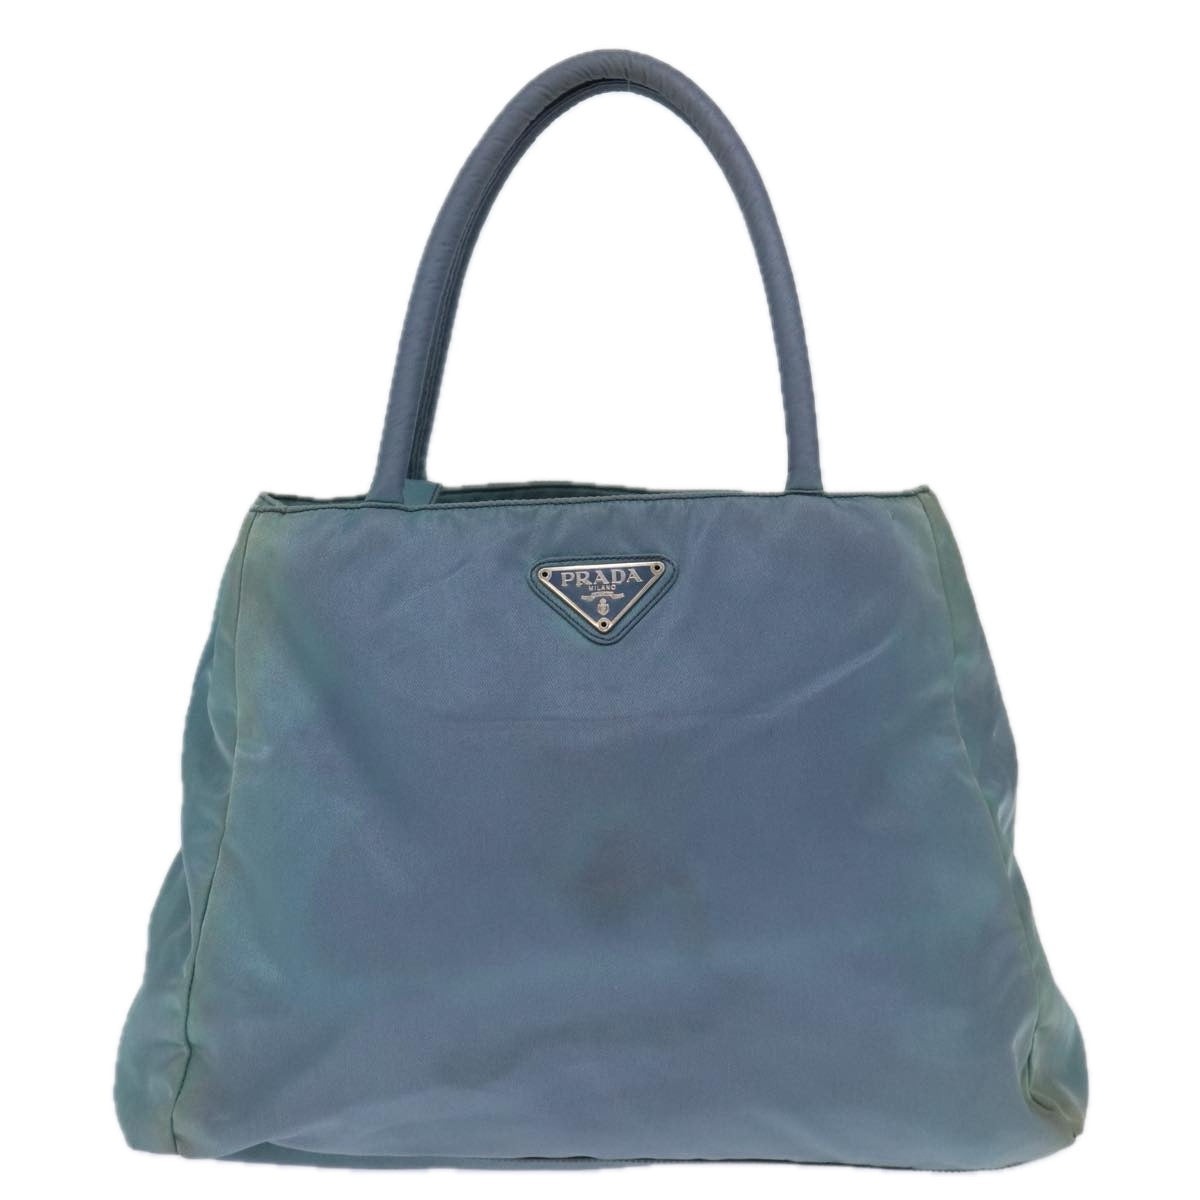 PRADA Hand Bag Nylon Blue Auth 72857 - 0